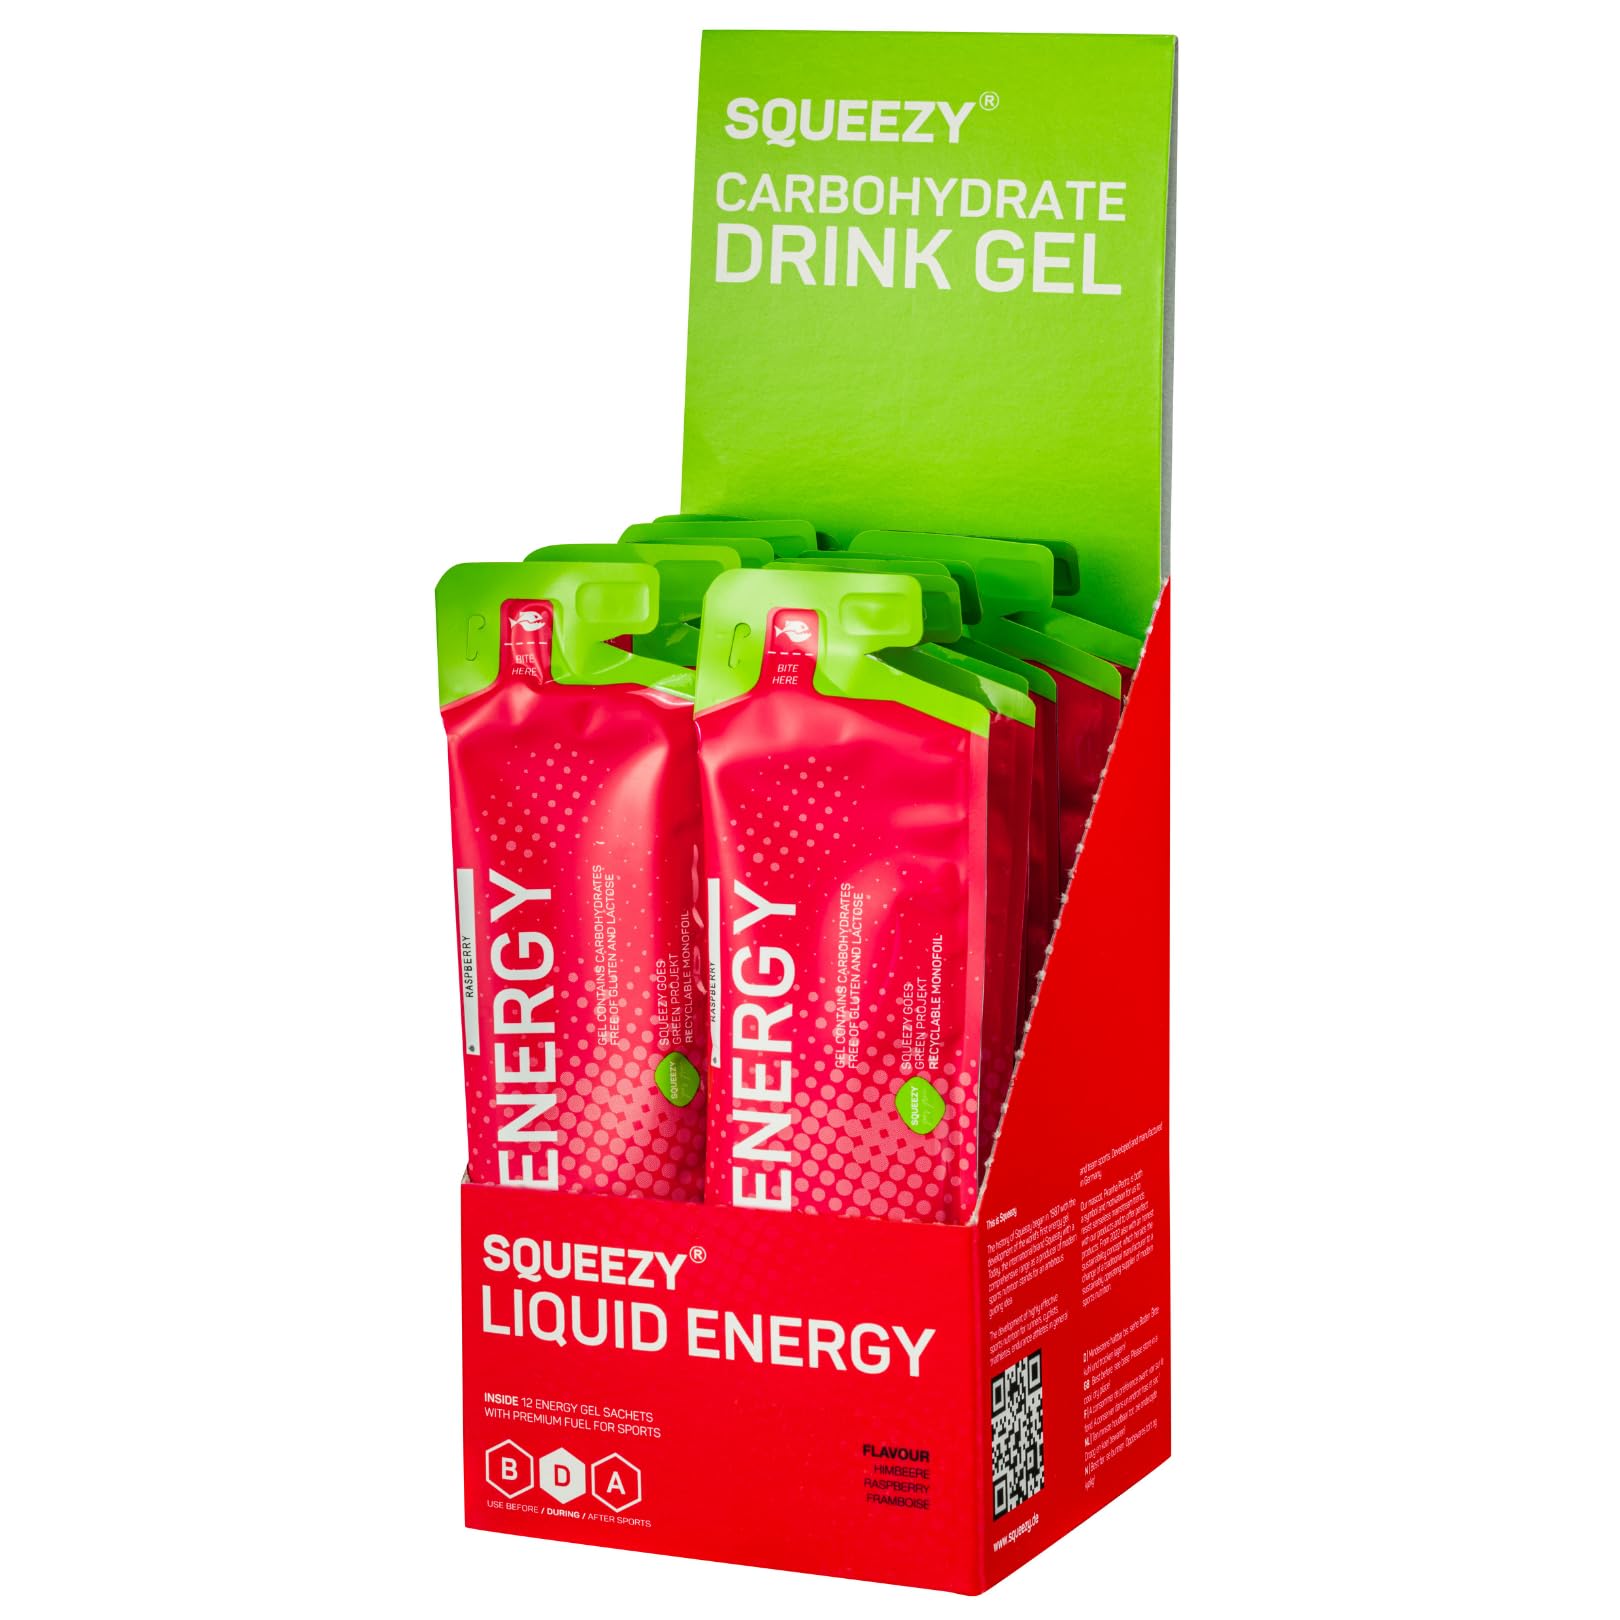 Squeezy Liquid Energy (Wassermelone) 12er Pack - Sport Energy Gel mit erhöhtem Wasseranteil für schnelle & dauerhafte Energie bei maximaler Verträglichkeit beim Radsport, Marathon & Co.